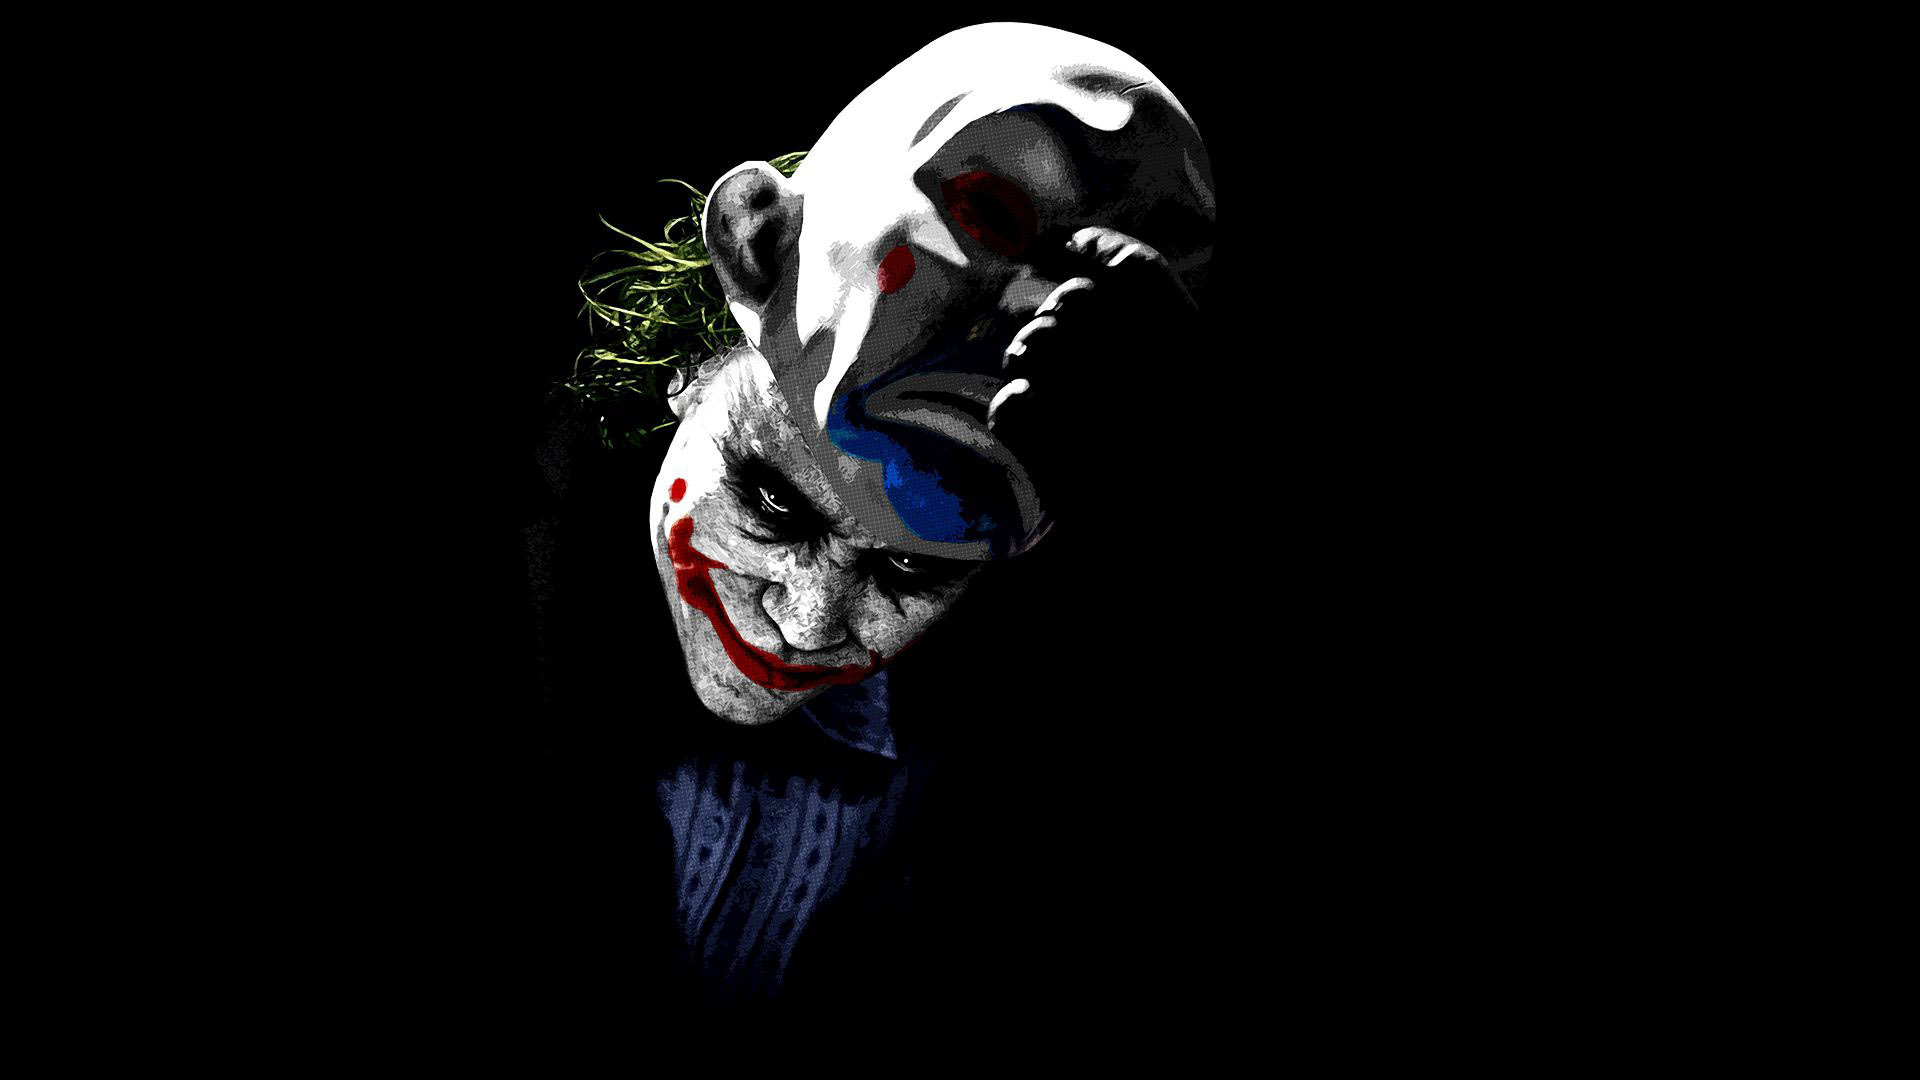 The Joker   The Dark Knight wallpaper   1208196